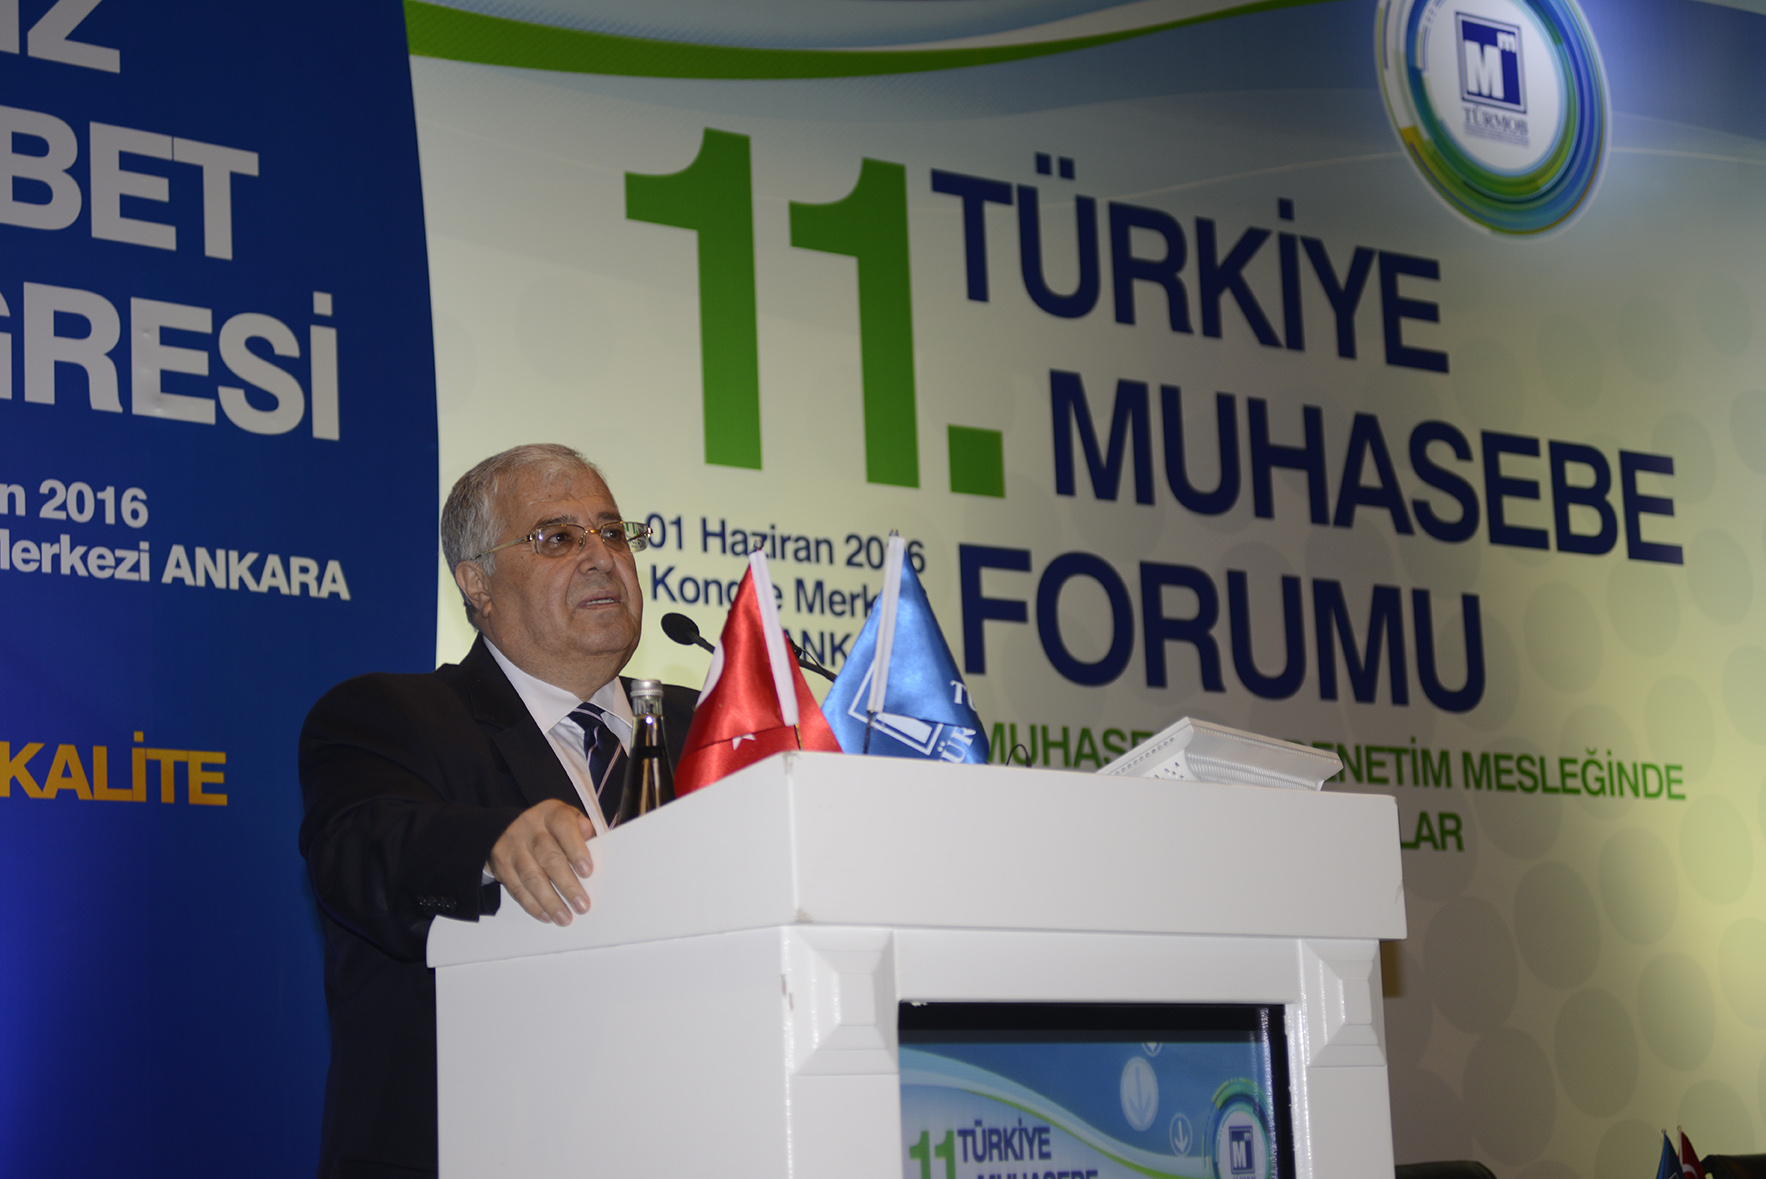 11. Türkiye Muhasebe Forumu 2. Oturum